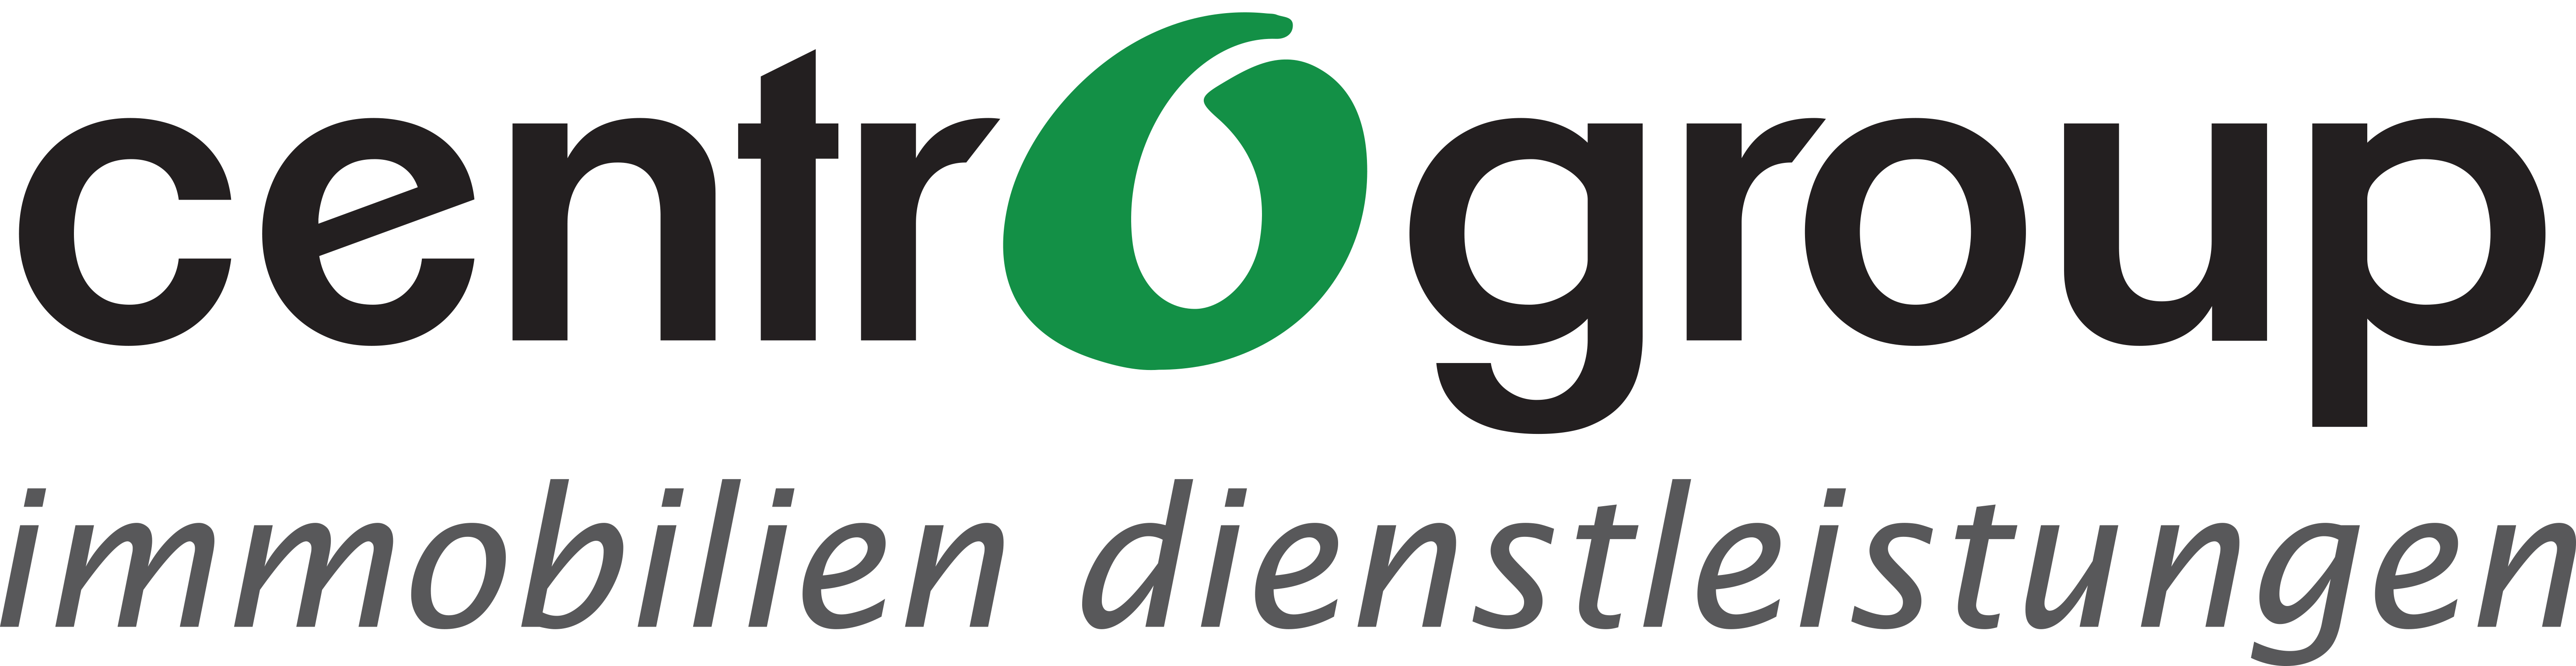 Centro Group Logo